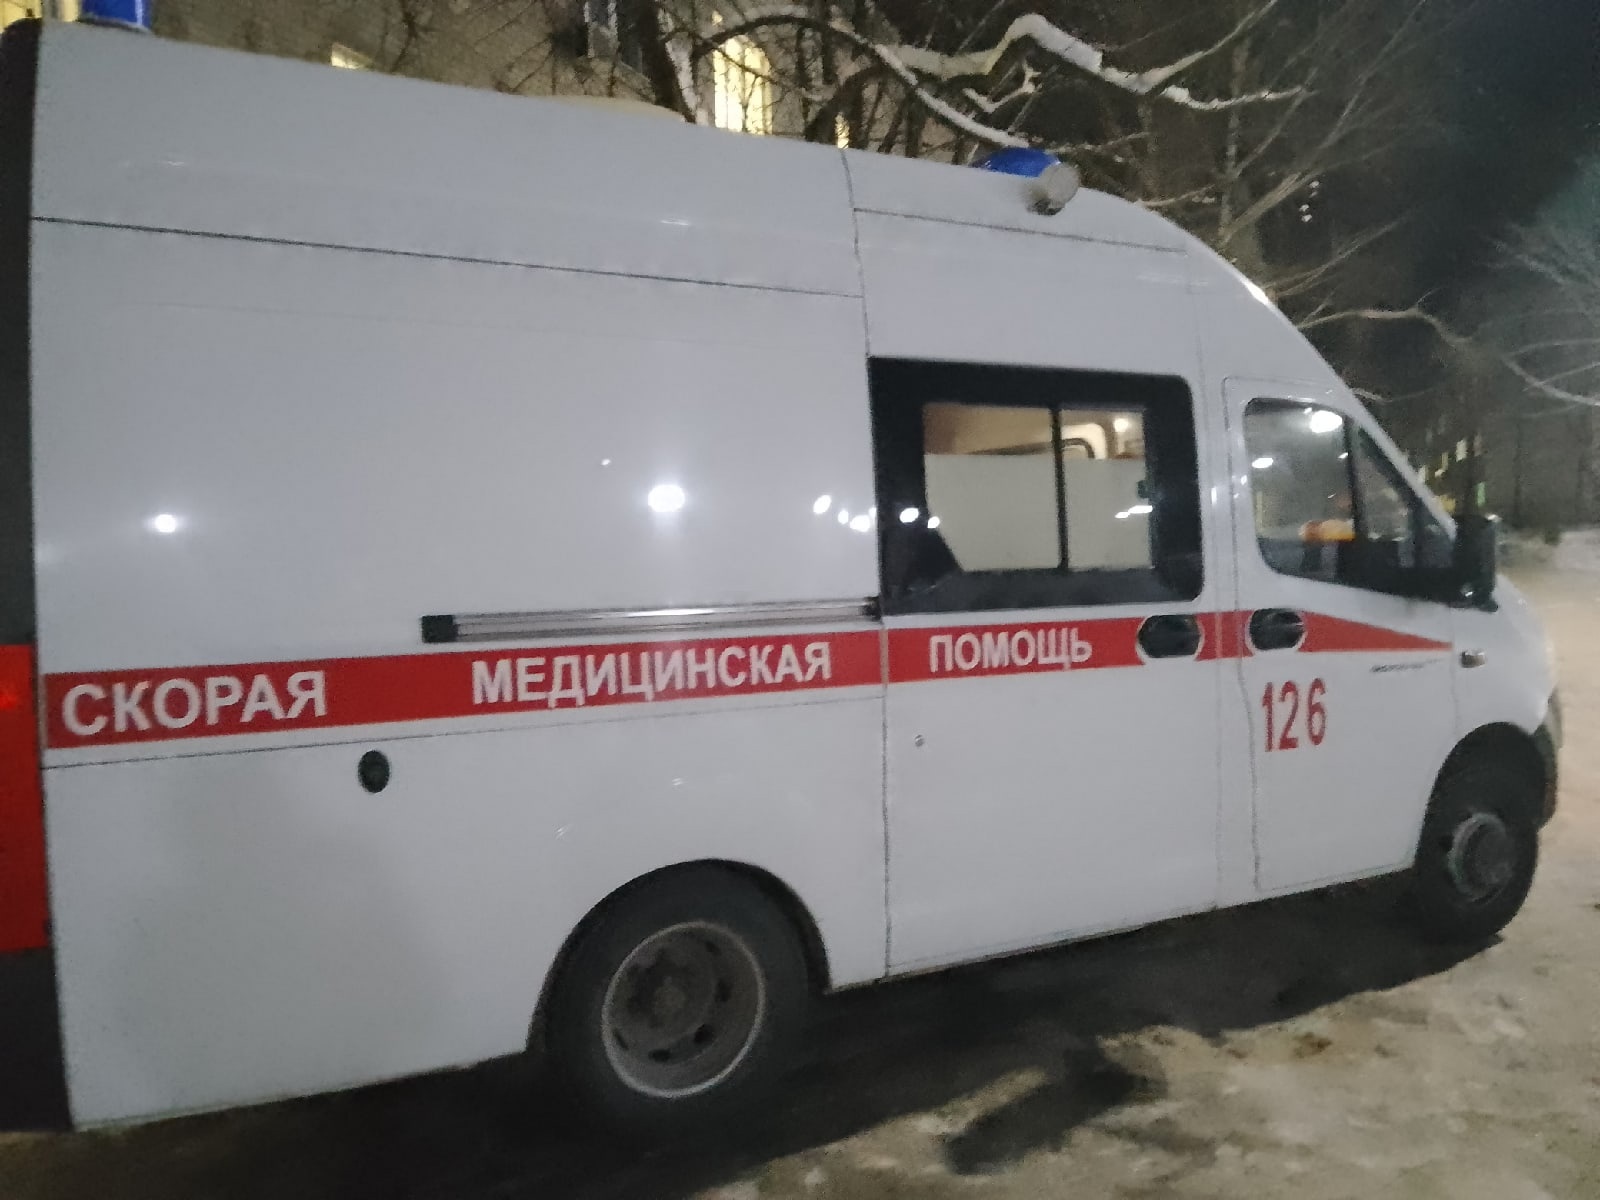 Работница получила серьезные ожоги на предприятии в Дзержинске: начато уголовное расследование